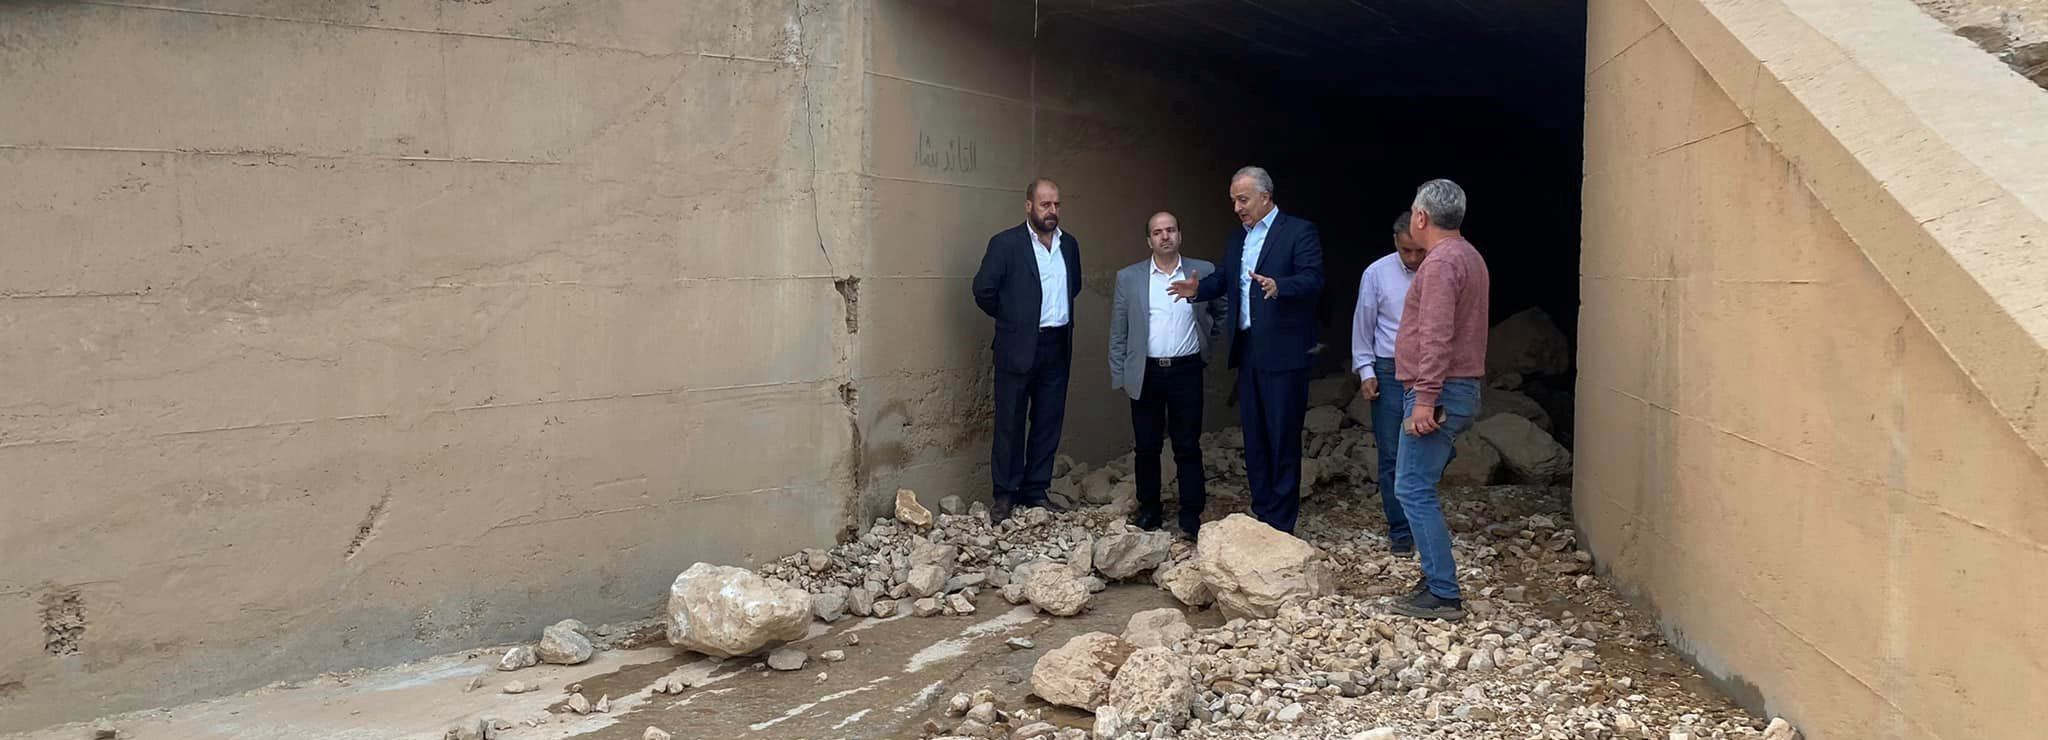 الوزير خزيّم يتفقد مواقع الانهيار الترابي الصخري على أوتوستراد دمشق- حمص